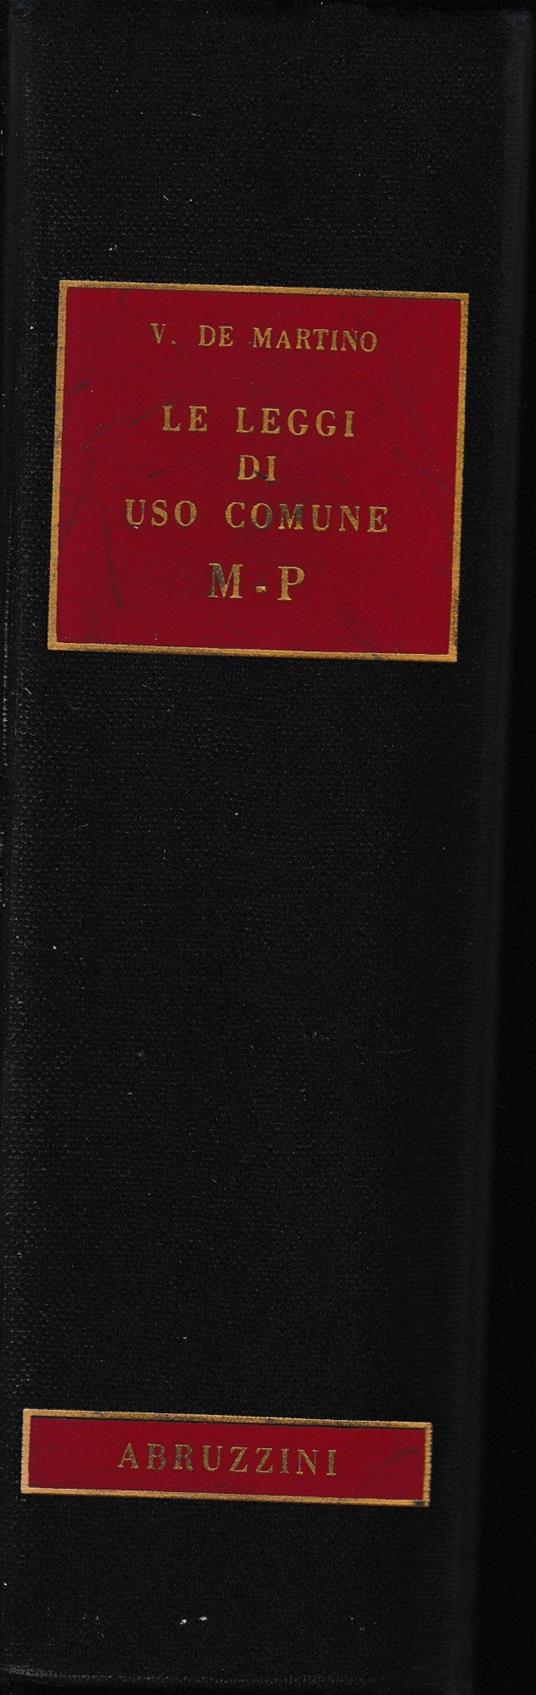 Le leggi di uso comune, vol. 5°: M-P - Vittorio De Martino - copertina